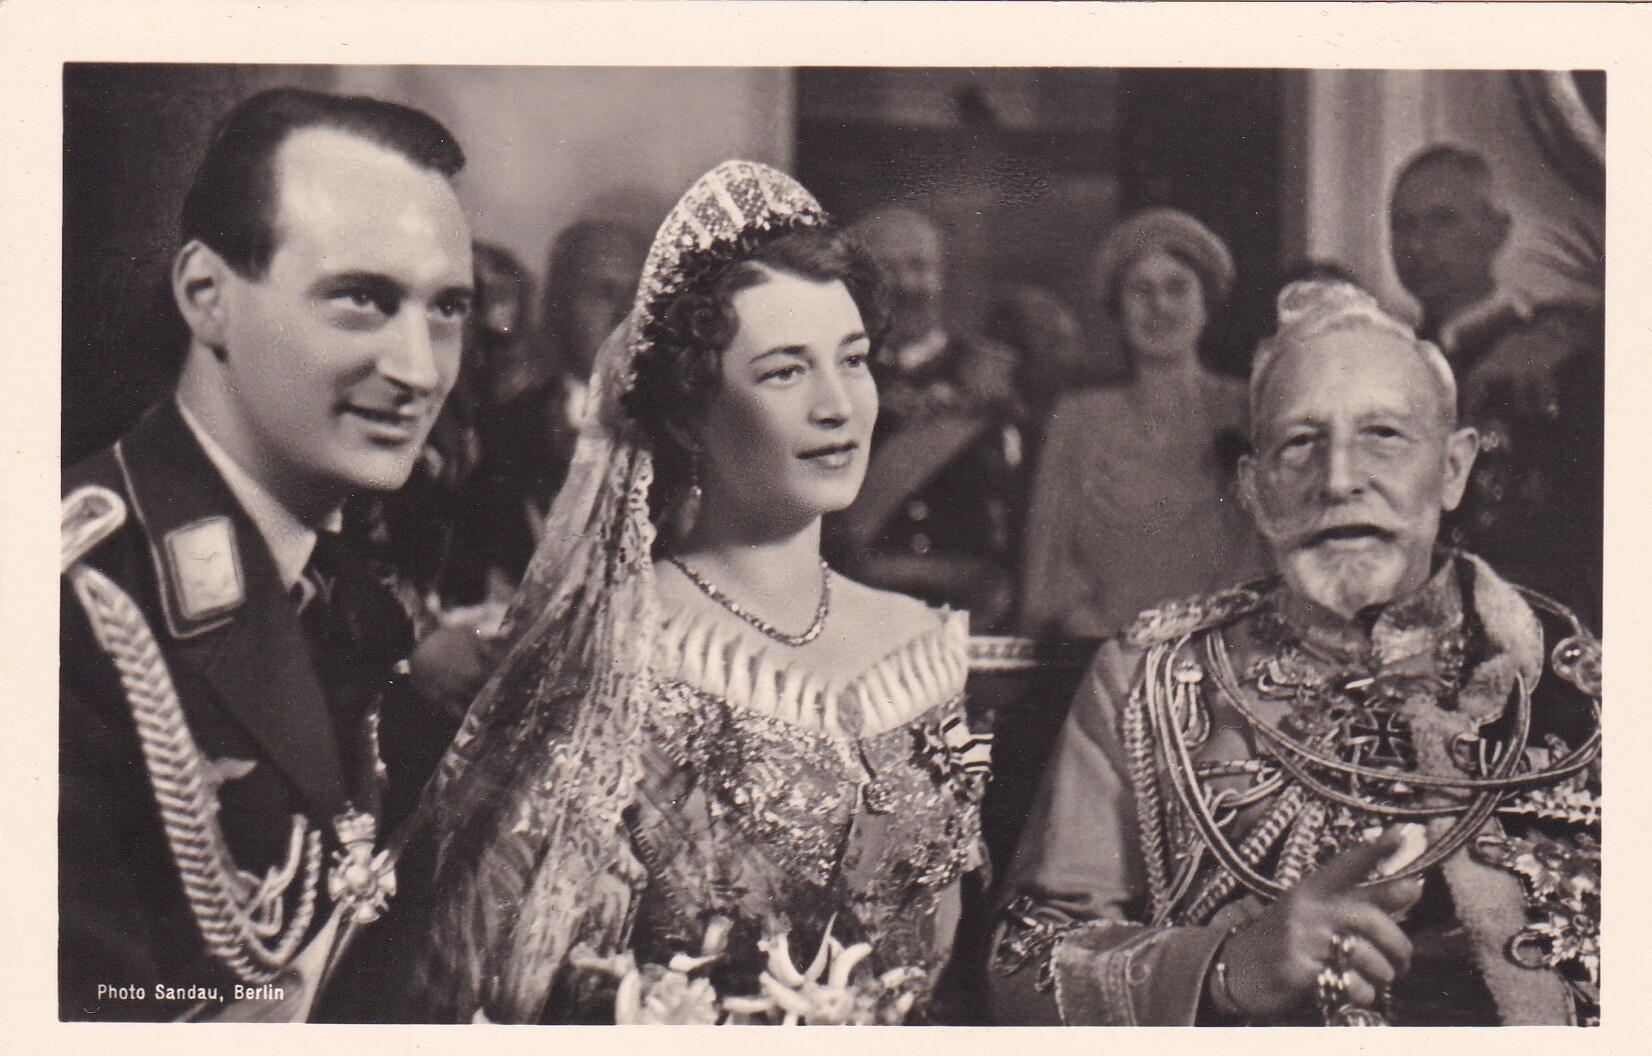 Bildpostkarte mit Foto des Brautpaares Louis Ferdinand Prinz von Preußen (1907-1994) und Kira Großfürstin von Russland (1909-1967) mit Ex-Kaiser Wilhe (Schloß Wernigerode GmbH RR-F)